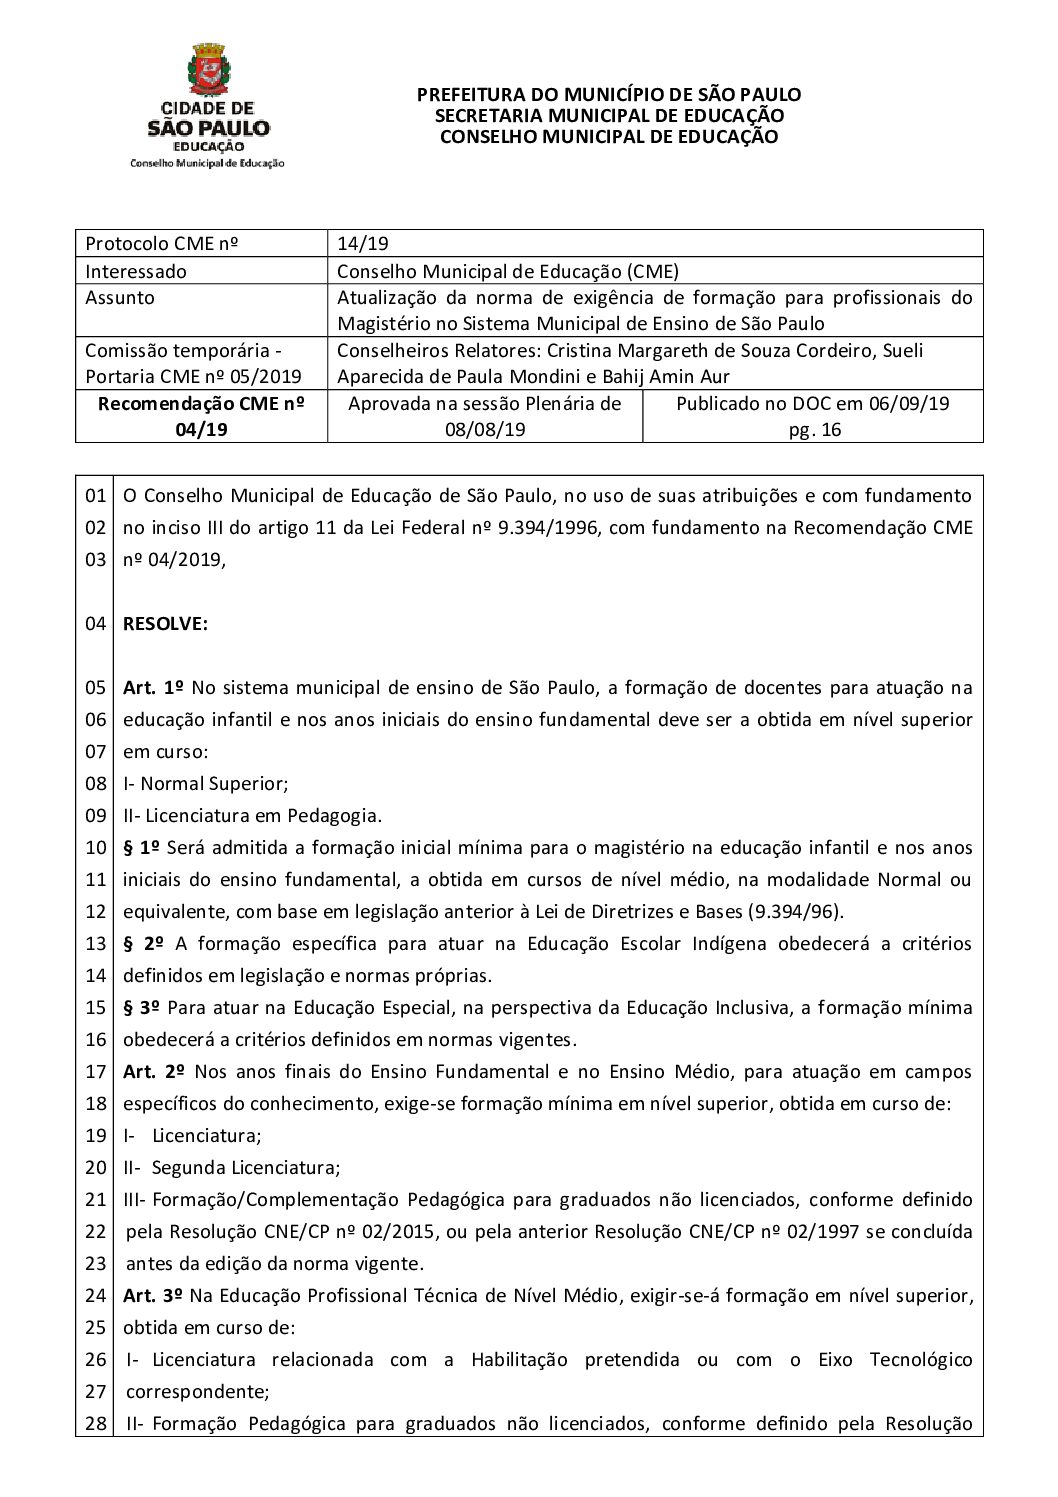 Resolução CME nº 04/2019 - Atualização da norma de exigência de formação para profissionais do Magistério no Sistema Municipal de Ensino de São Paulo 